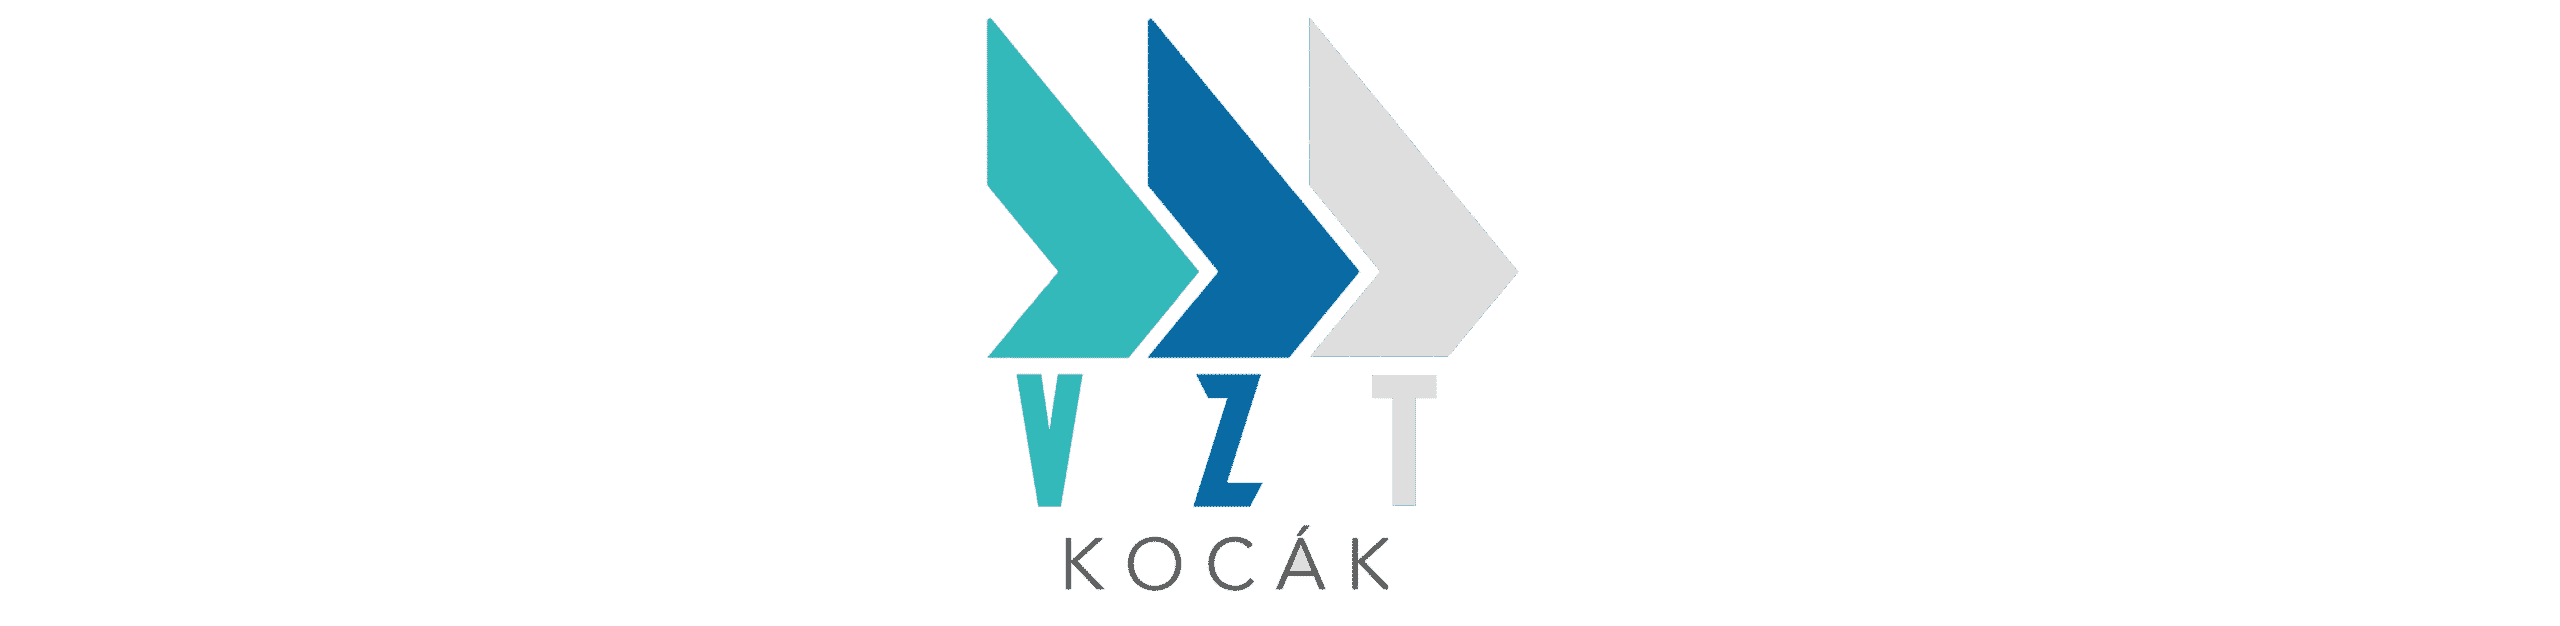 VZT Kocák Logo